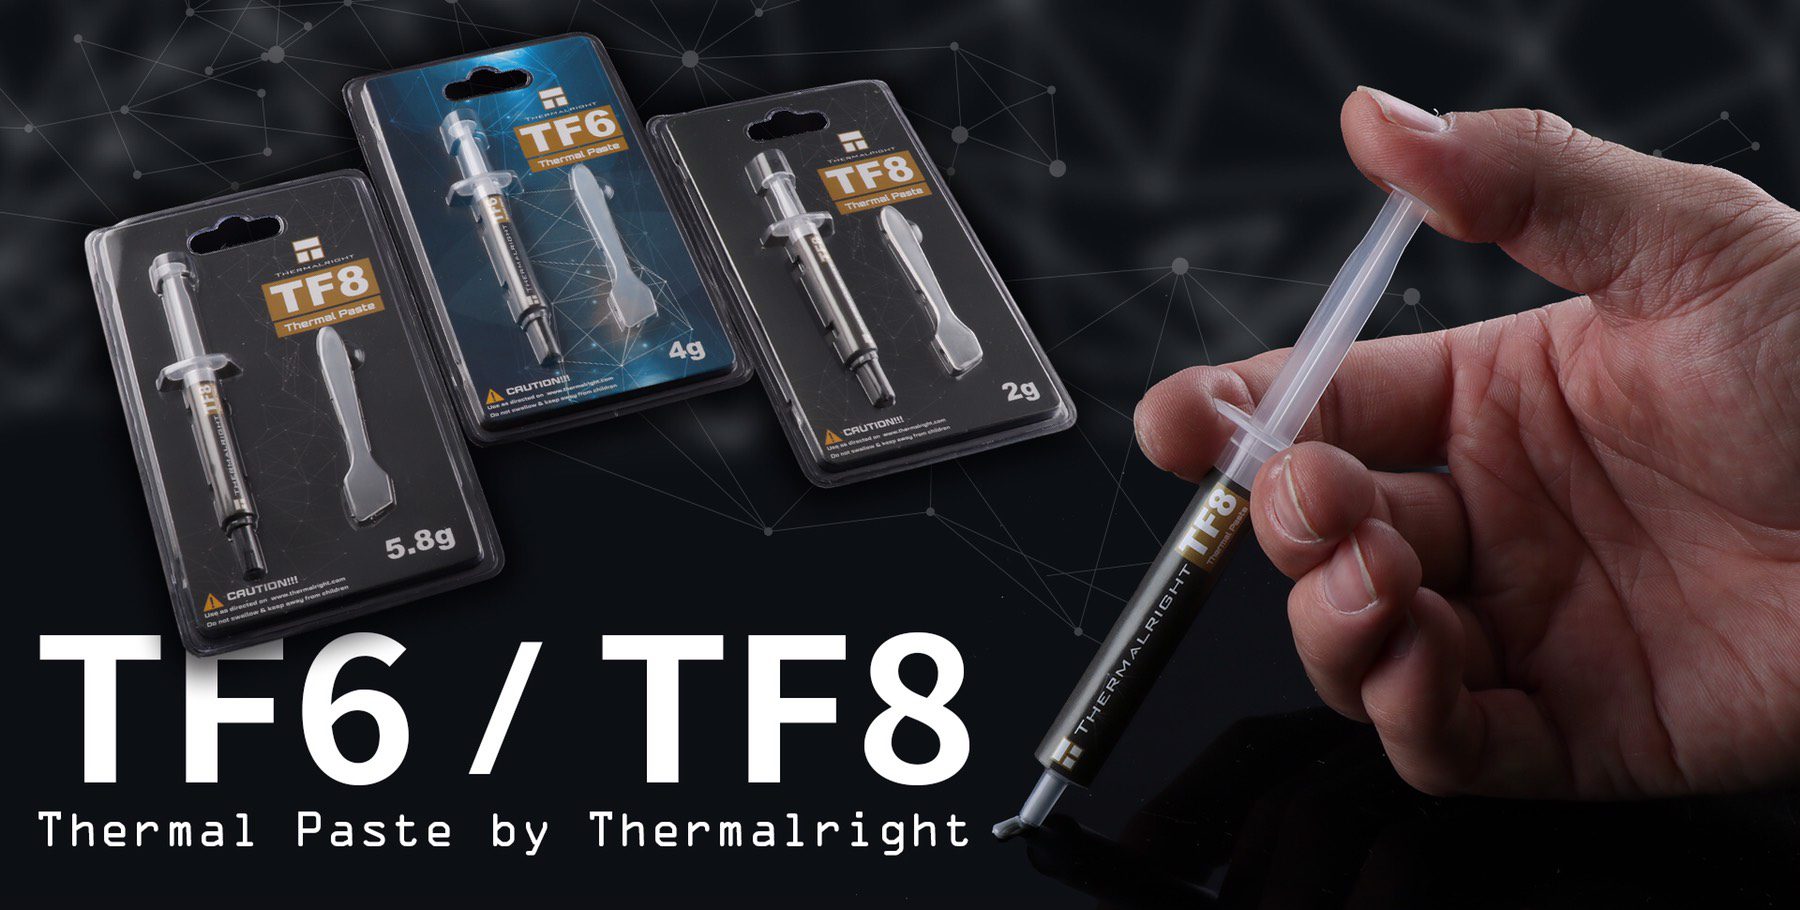 TF6/TF8 thermal paste